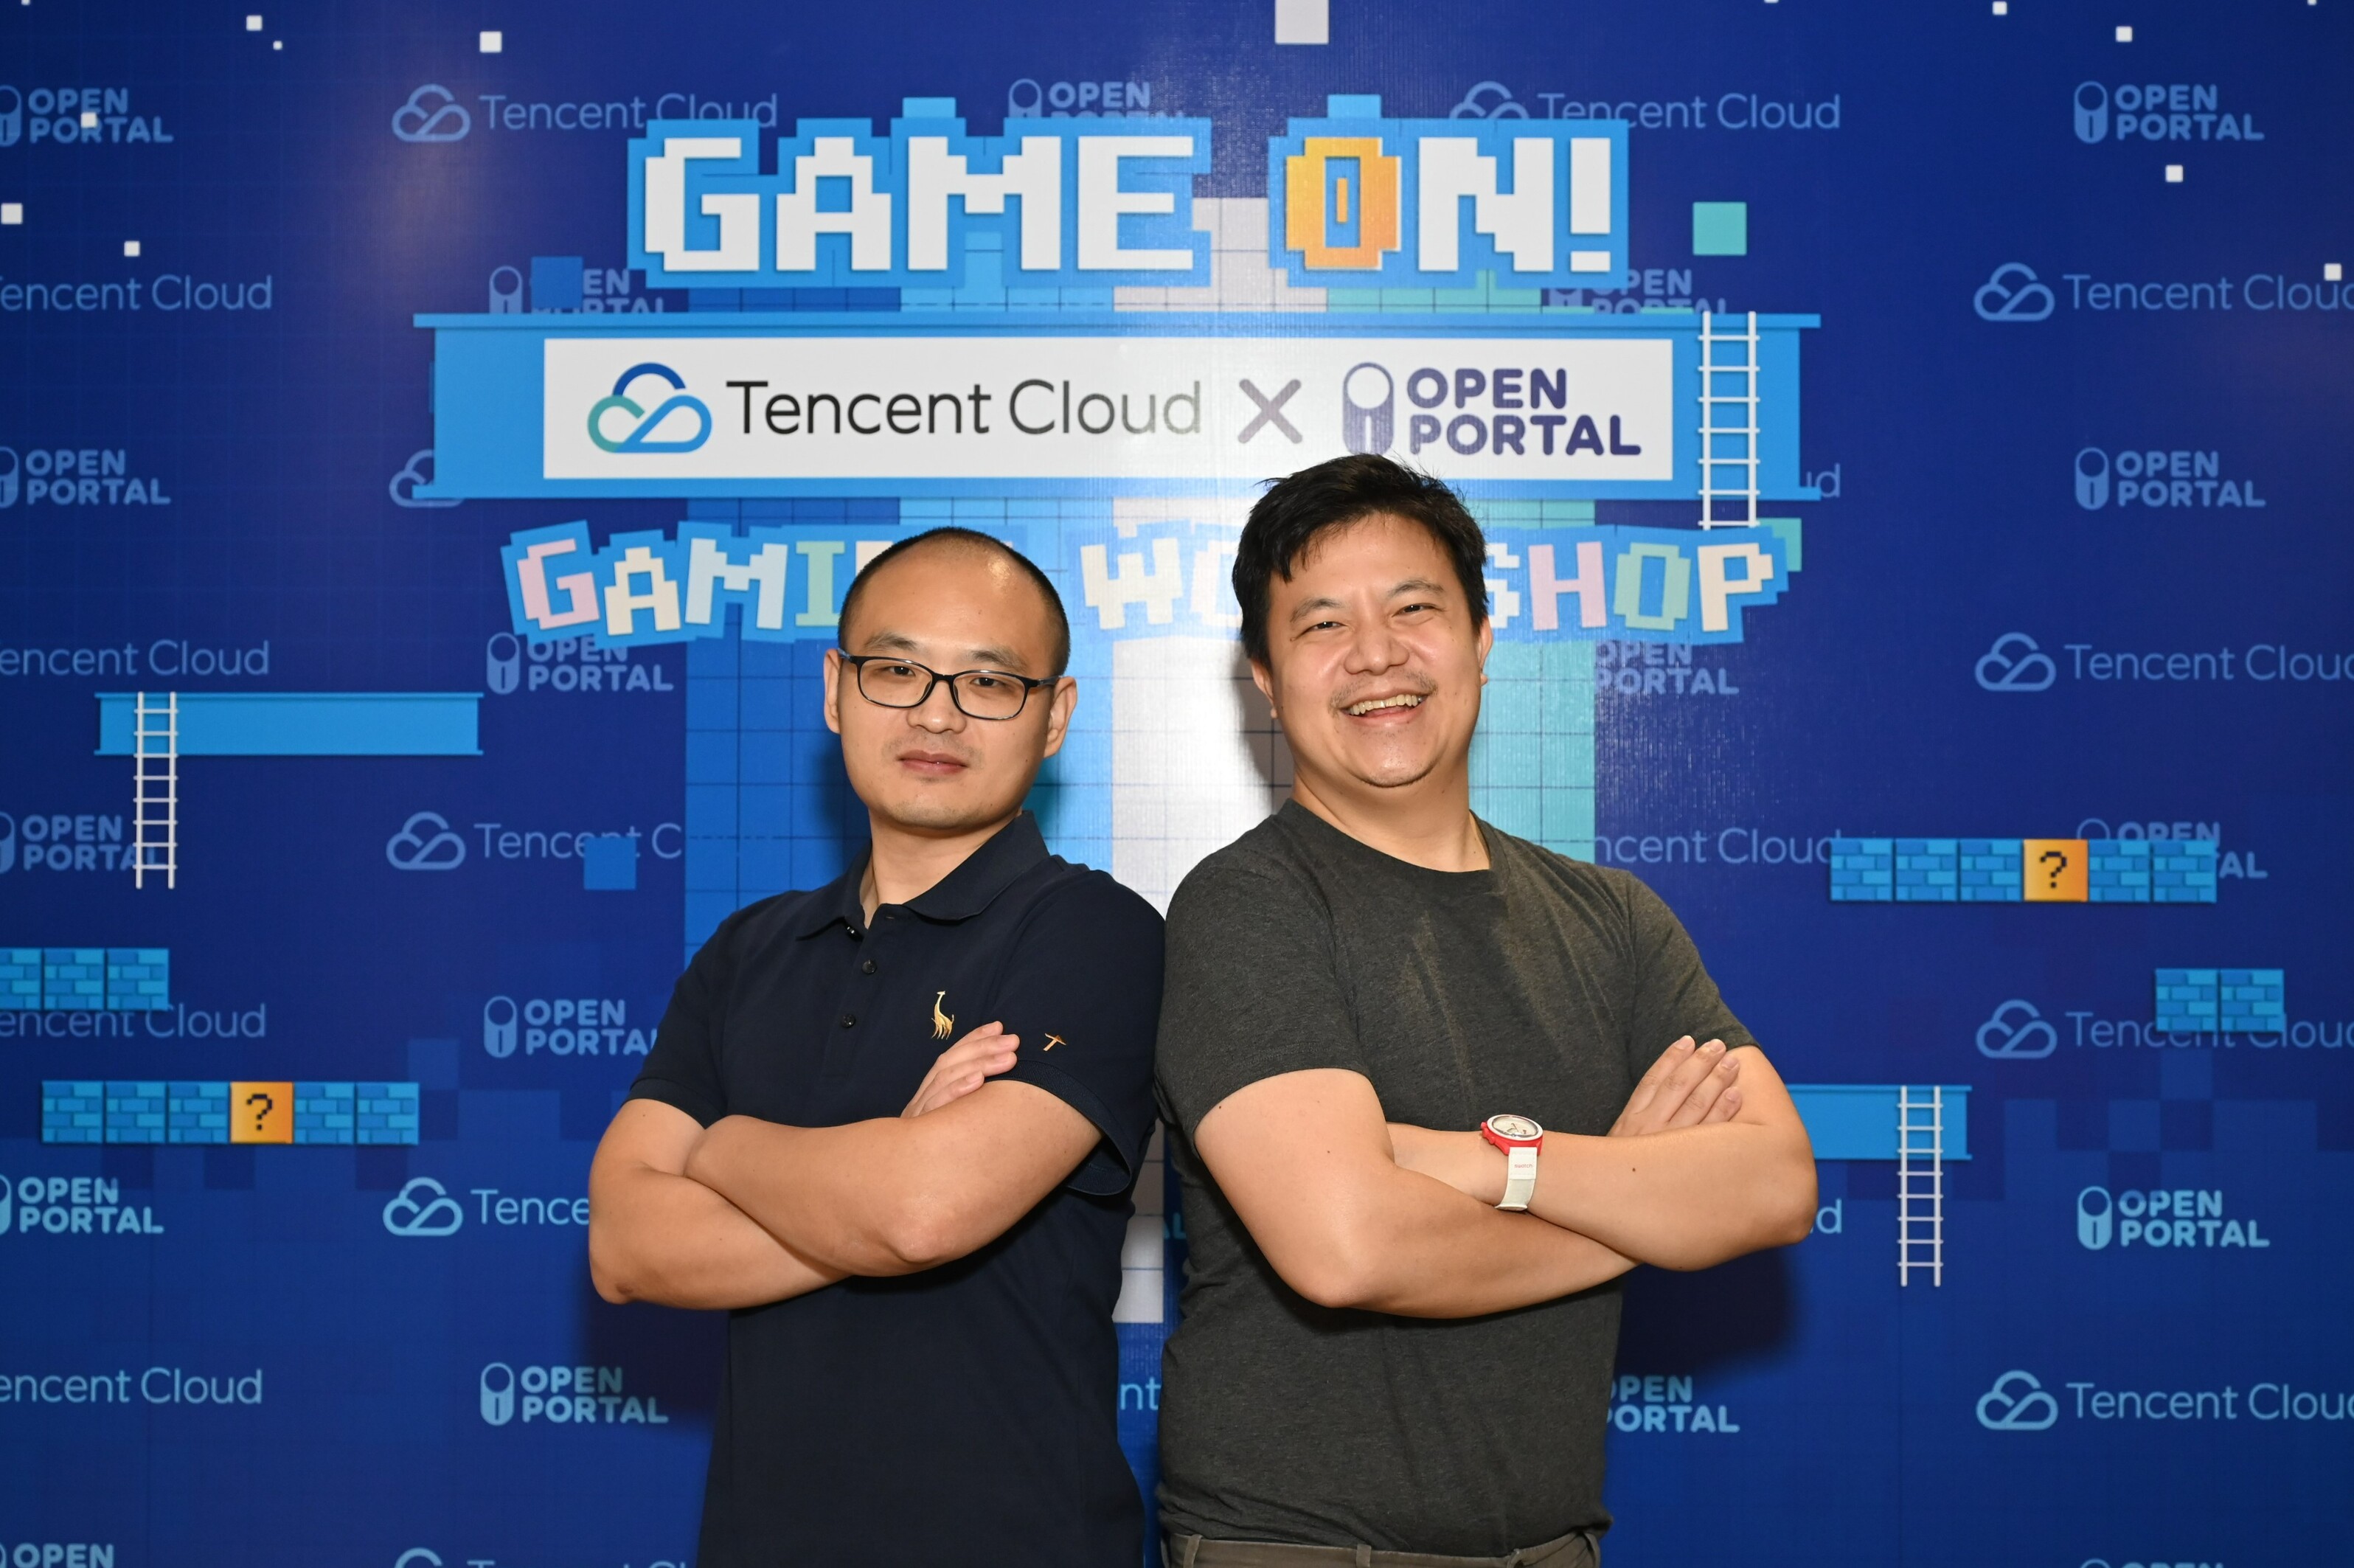 เทนเซ็นต์ คลาวด์ ร่วมกับ โอเพน พอร์ทัล จัดงาน Game On! Gaming Workshop ชวนผู้ประกอบการธุรกิจเกมทั้งในไทยและต่างประเทศ ร่วมอัปเดตเทคโนโลยีคลาวด์-เอไอ